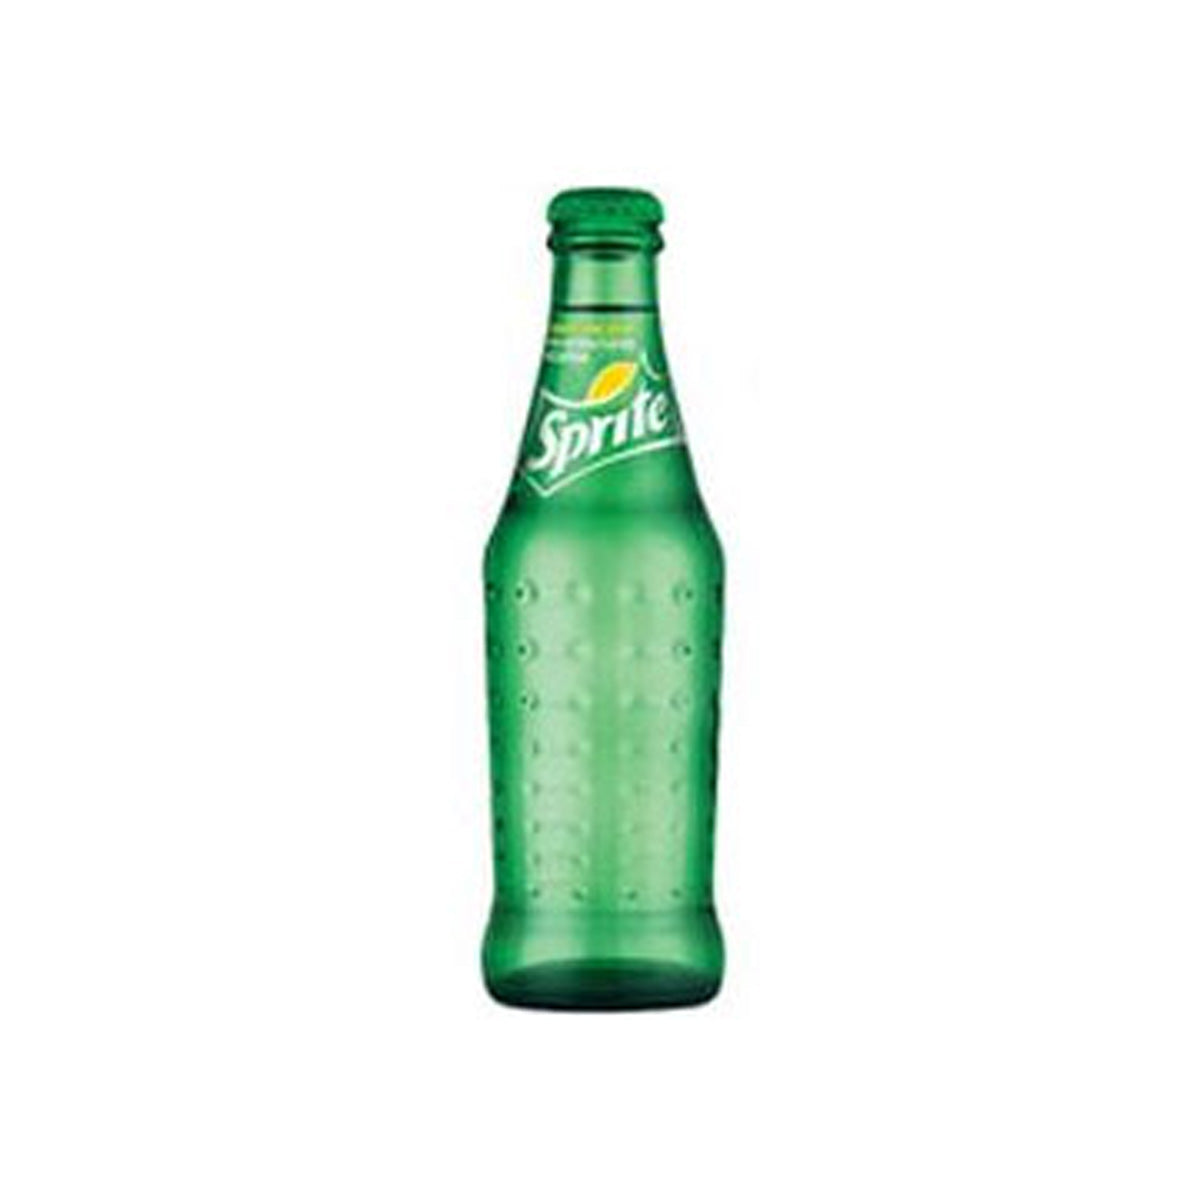 Sprite Lemon-Lime Soda Glass Bottle 8 OZ